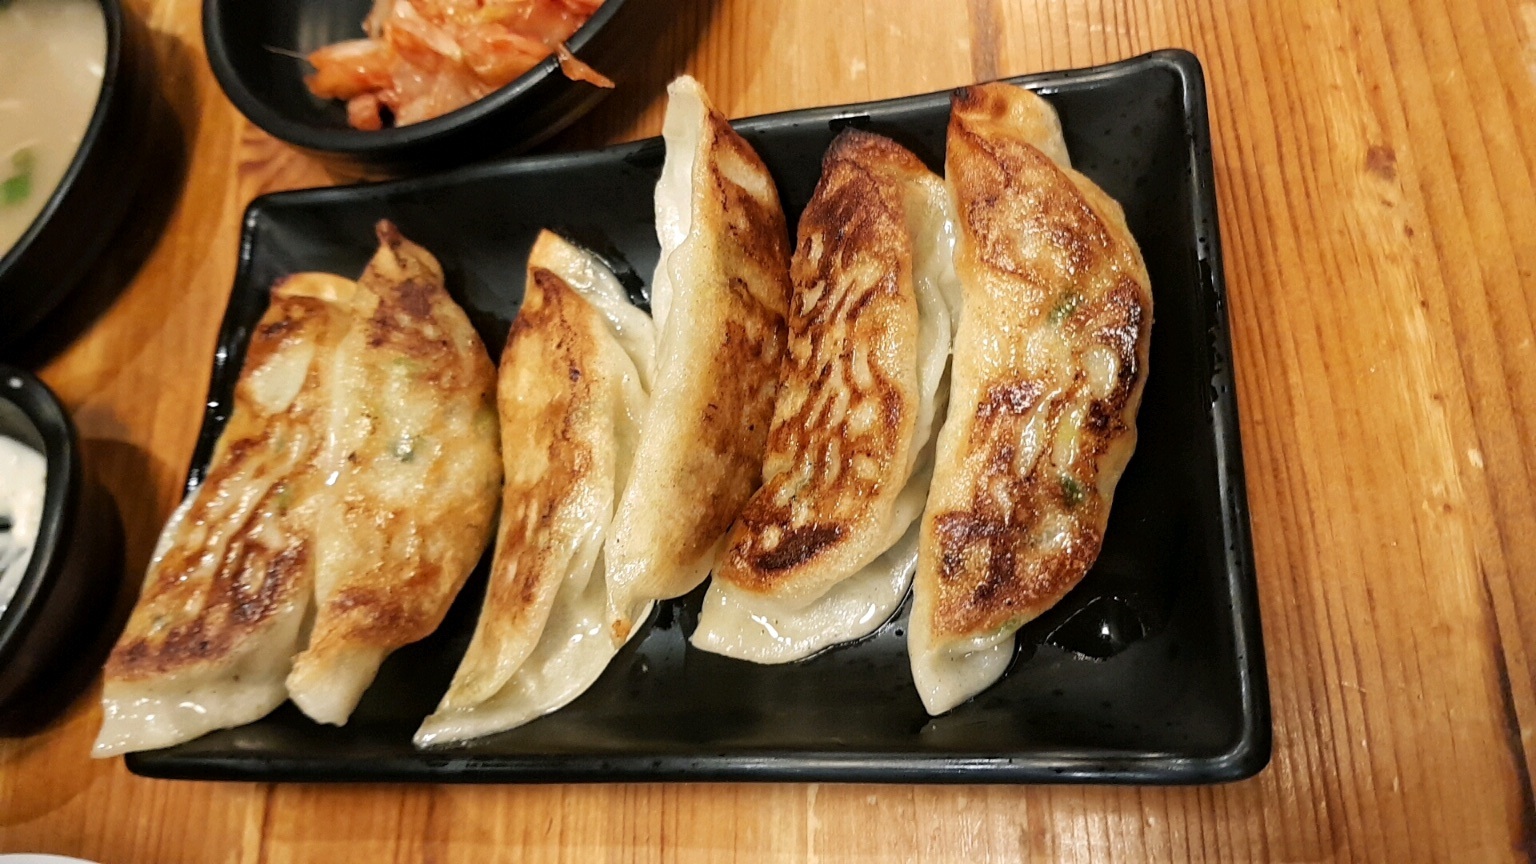 분당 수내역 라멘 맛집 니고라멘 - 교자(6 pcs)